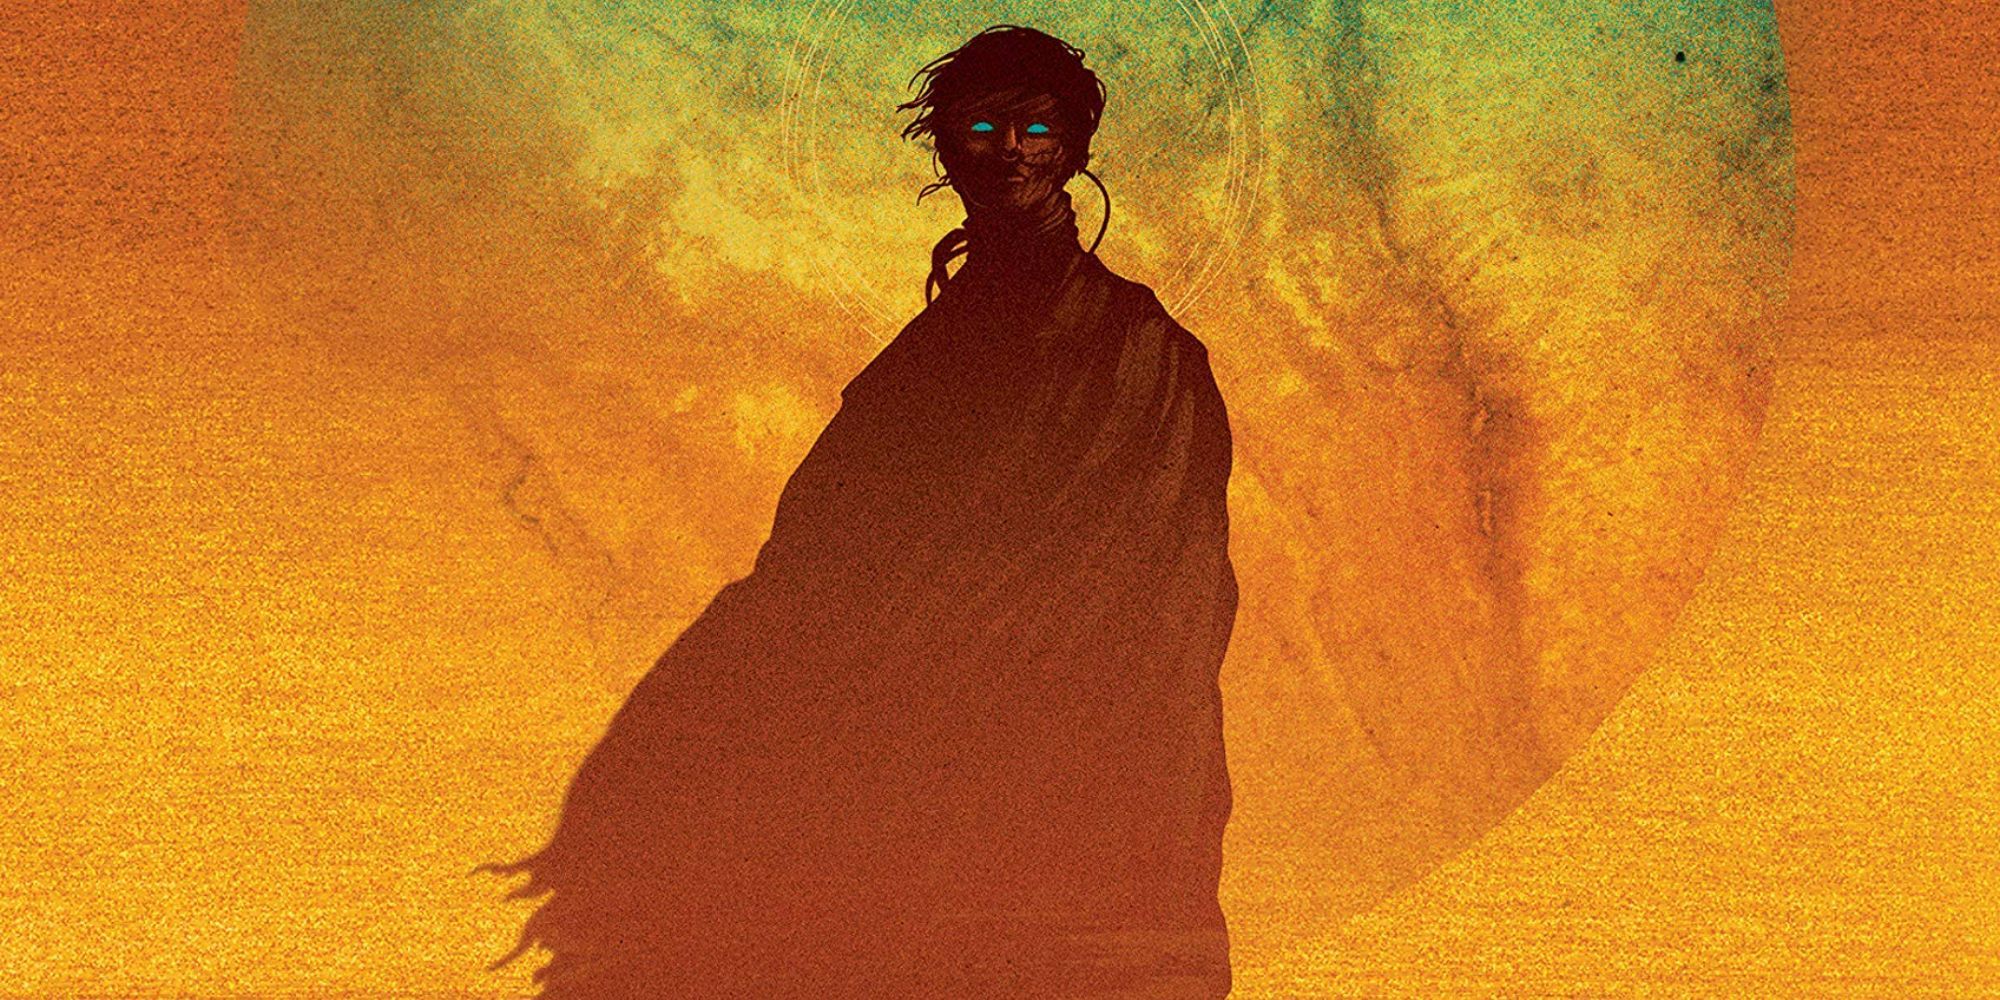 The cover of Frank Herbert's novel Dune